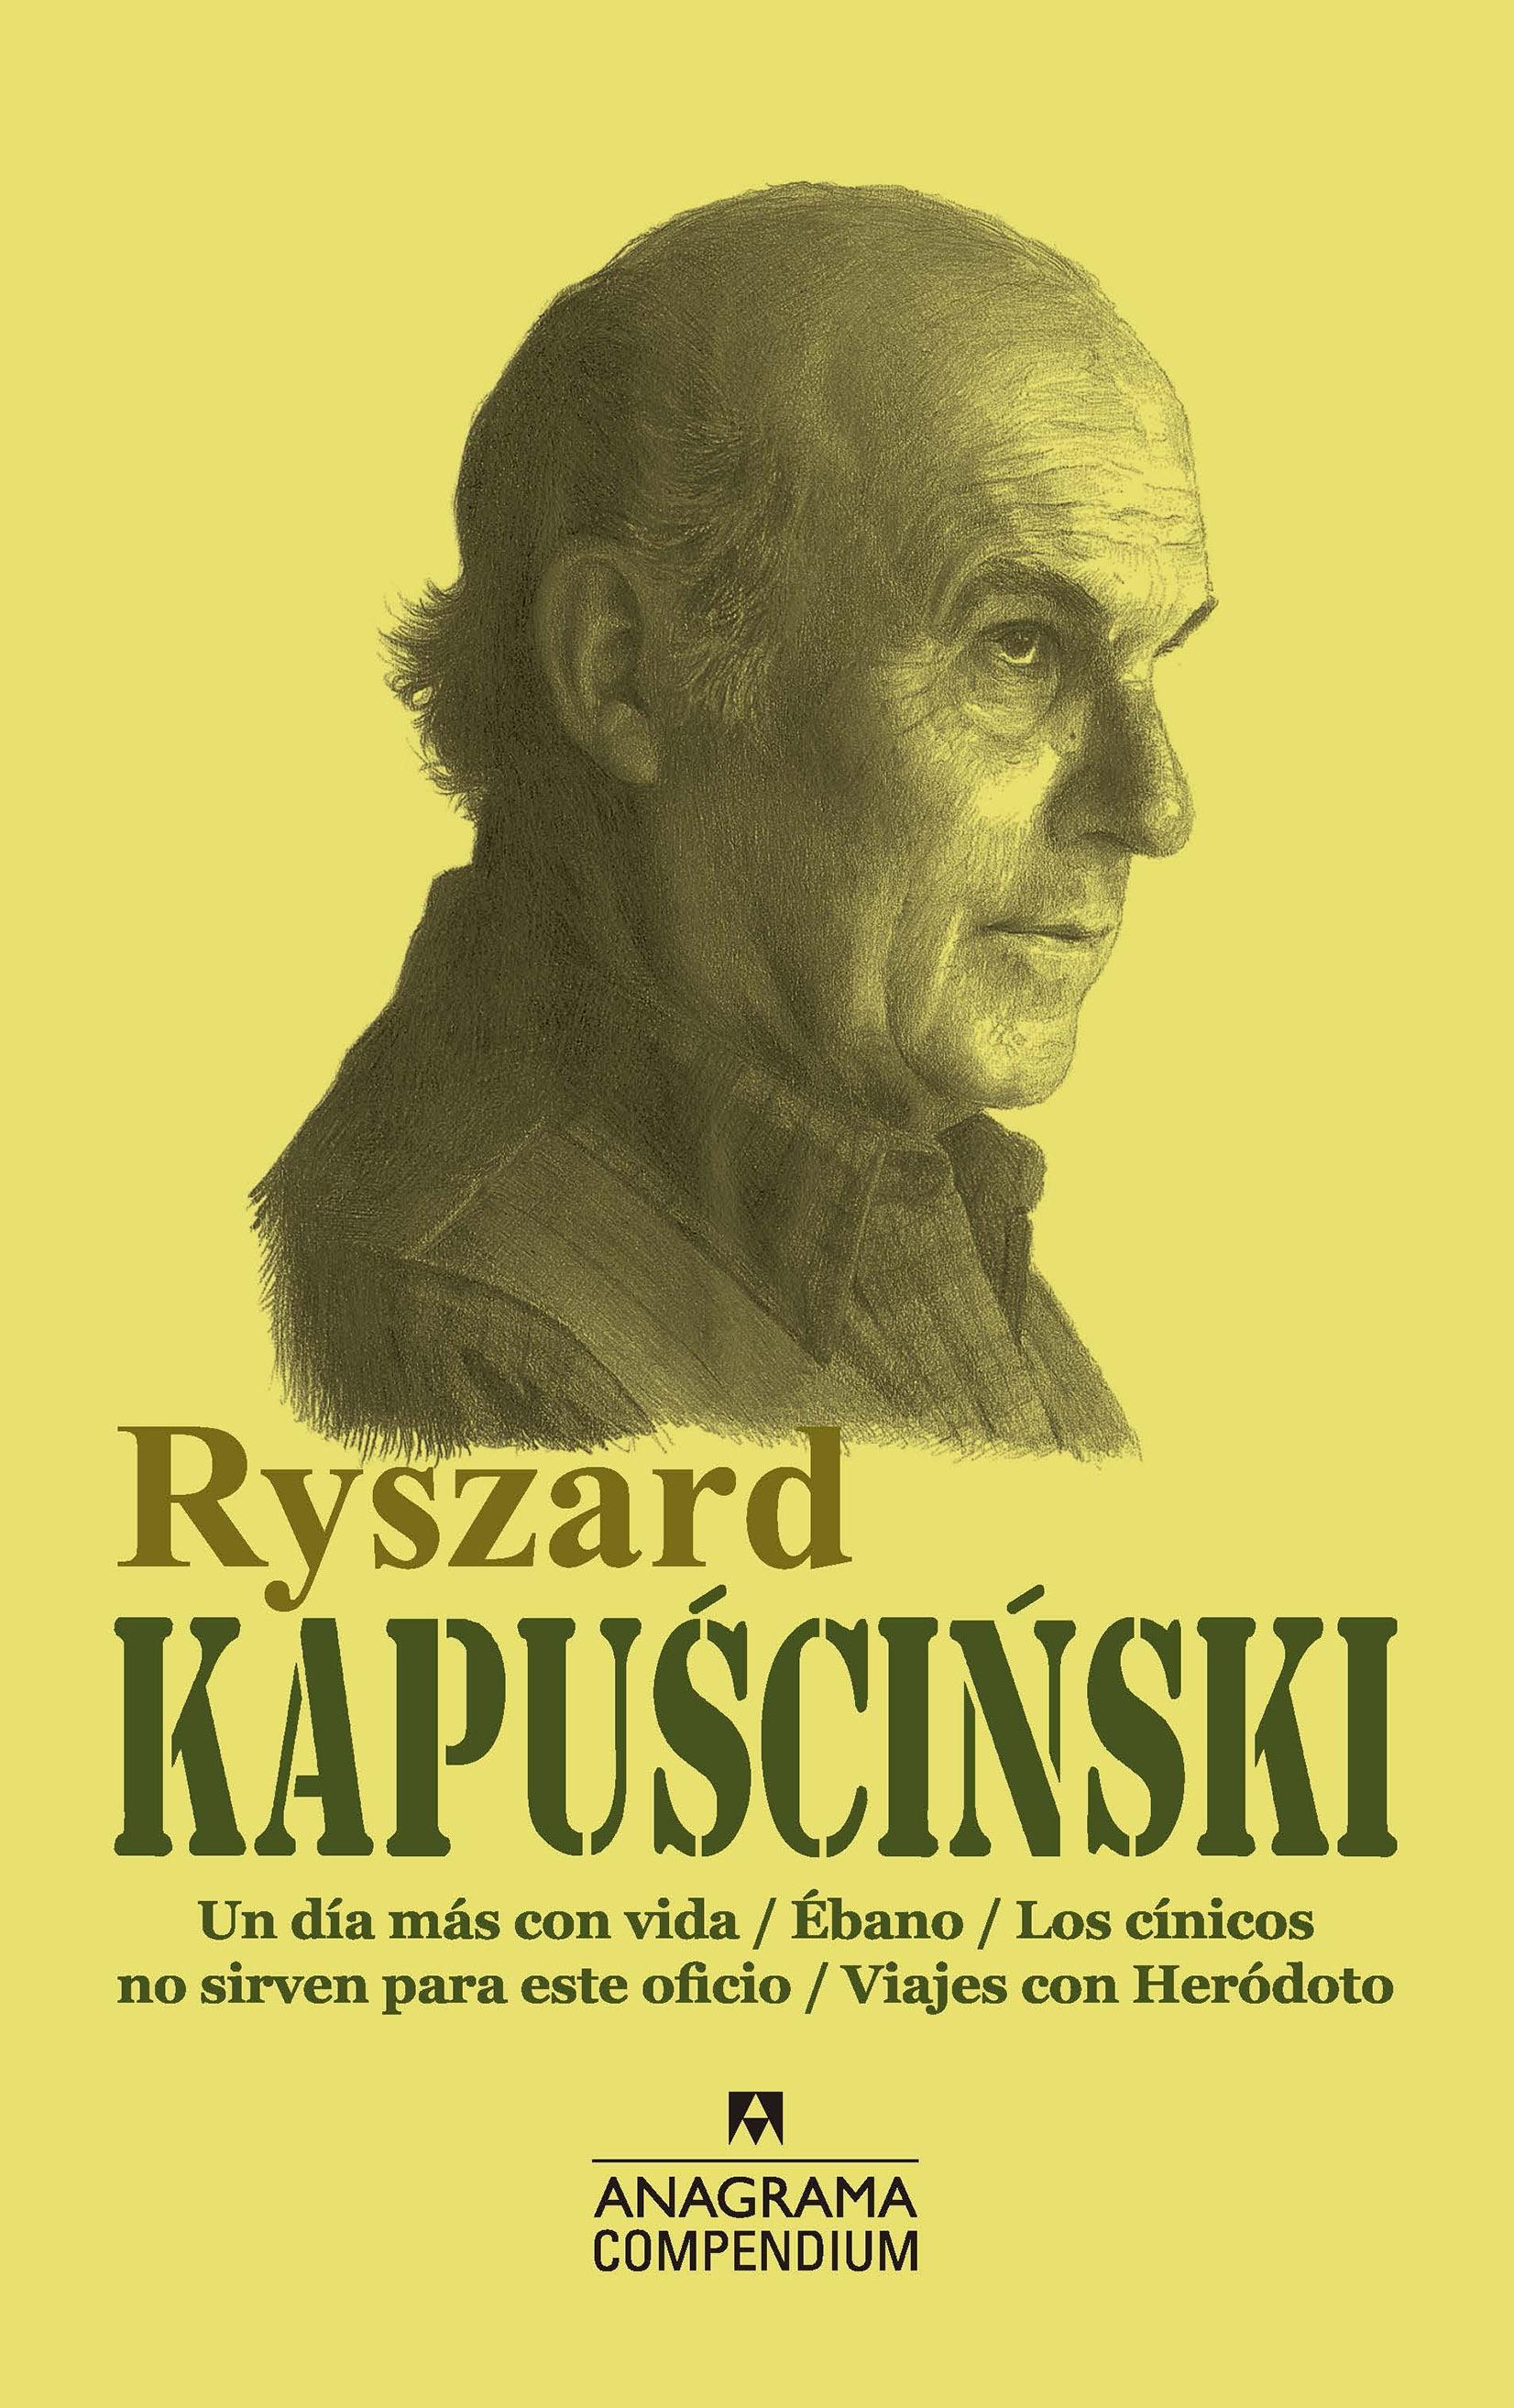 Ryszard Kapuscinski "Un Día Más con Vida / Ébano / los Cínicos no Sirven para Este Oficio / V". 